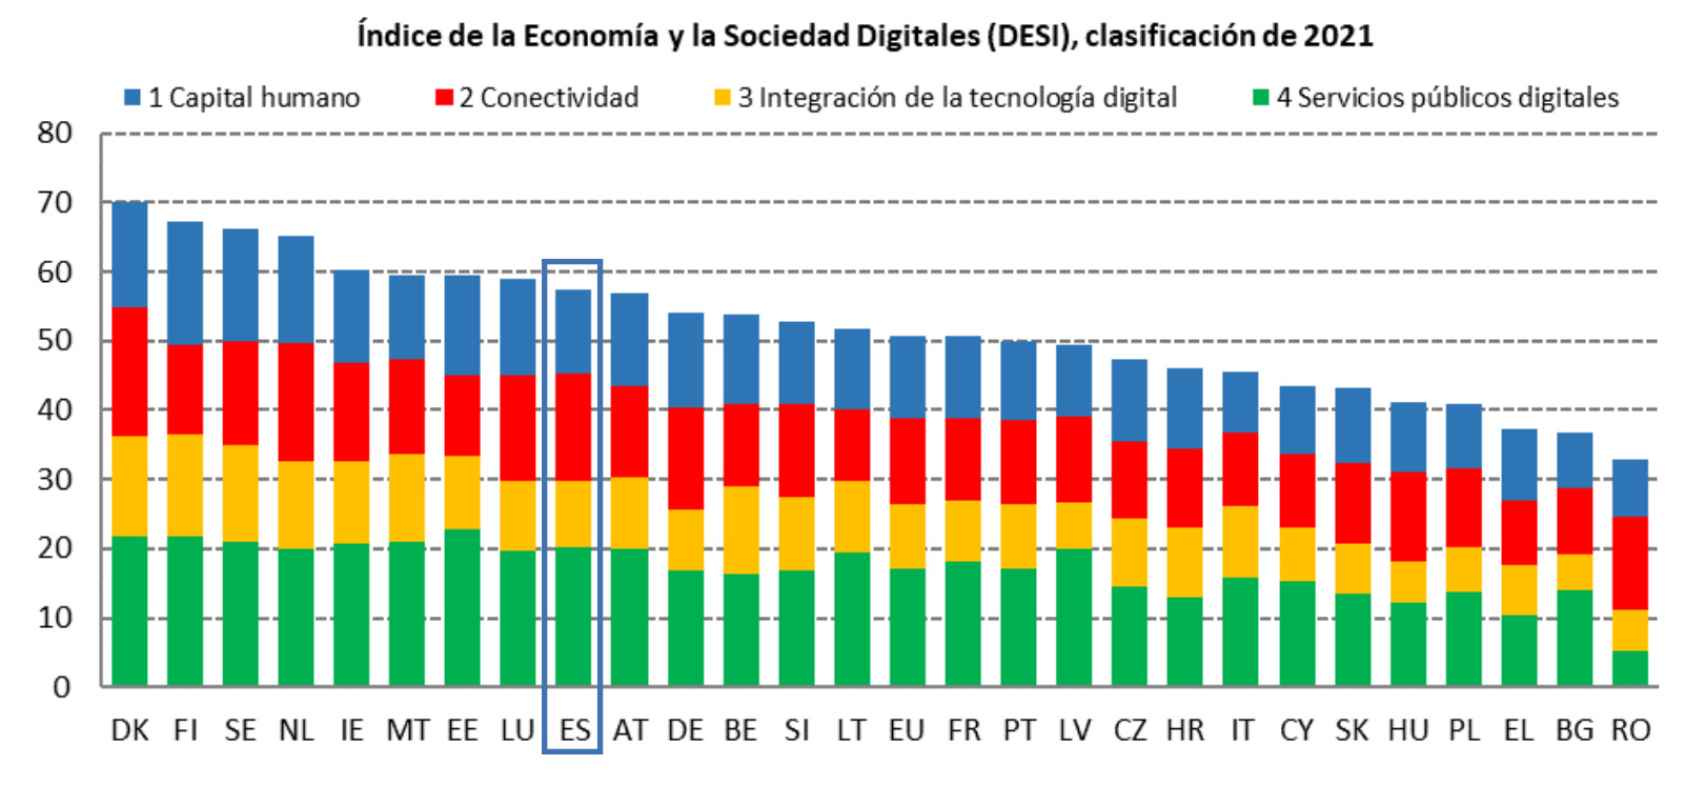 España ocupa la posición número 9 en el Índice de la Economía y la Sociedad Digitales (DESI)